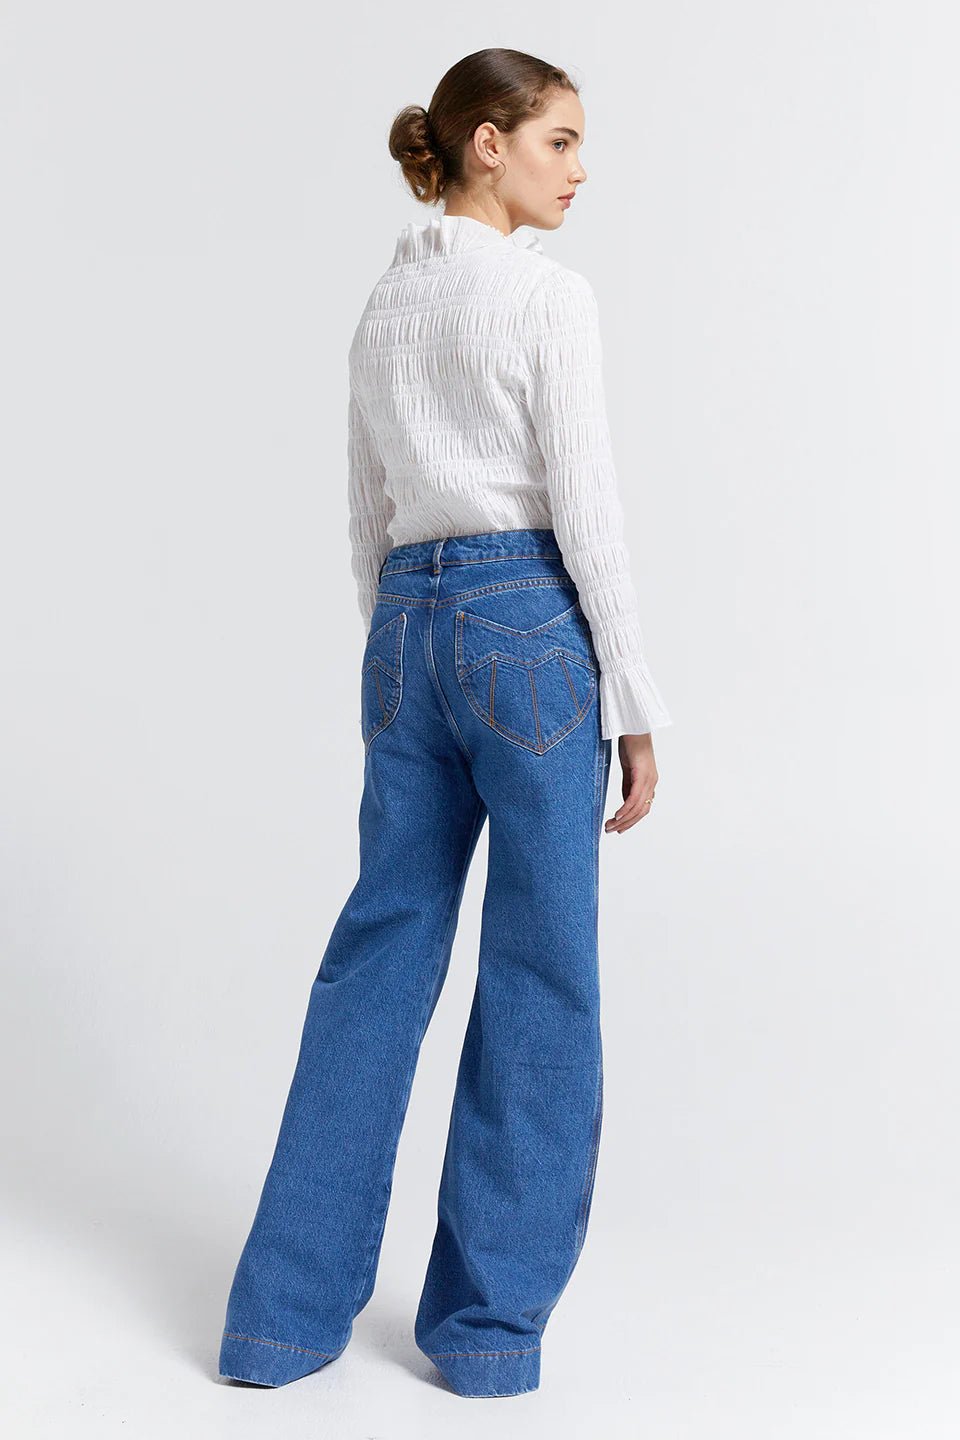 Shop Outland Denim x Karen Walker Mod Flared Jeans | Washed Denim - Outland Denim